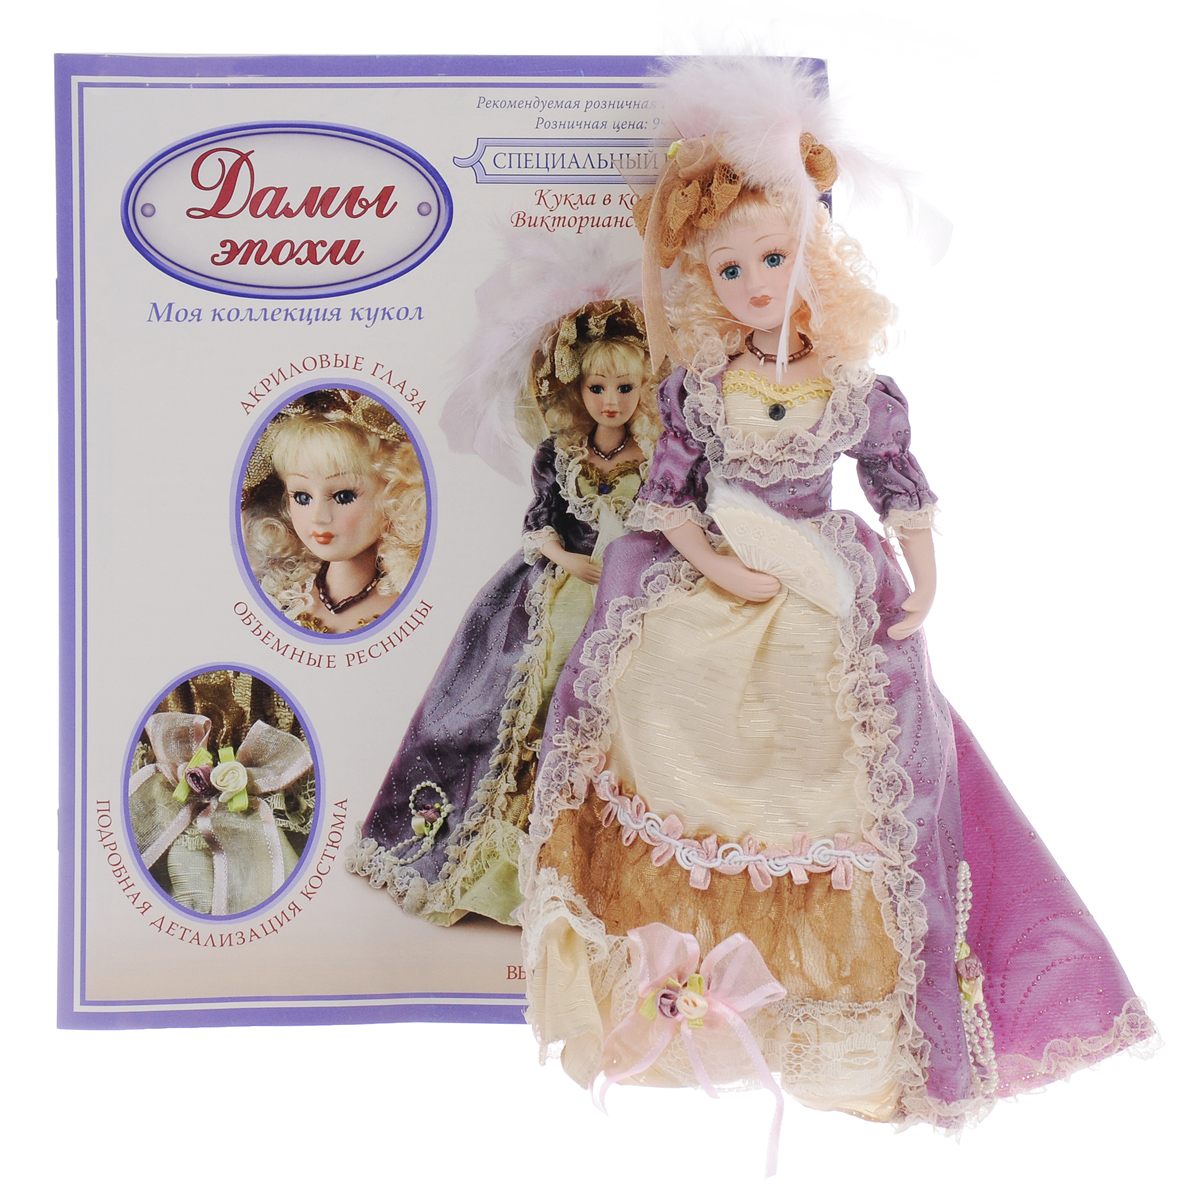 Купить куклы эпох. Куклы ДЕАГОСТИНИ дамы эпохи. Куклы ДЕАГОСТИНИ дамы эпохи коллекция. Фарфоровые куклы ДЕАГОСТИНИ дамы эпохи. Куклы ДЕАГОСТИНИ дамы викторианской эпохи.